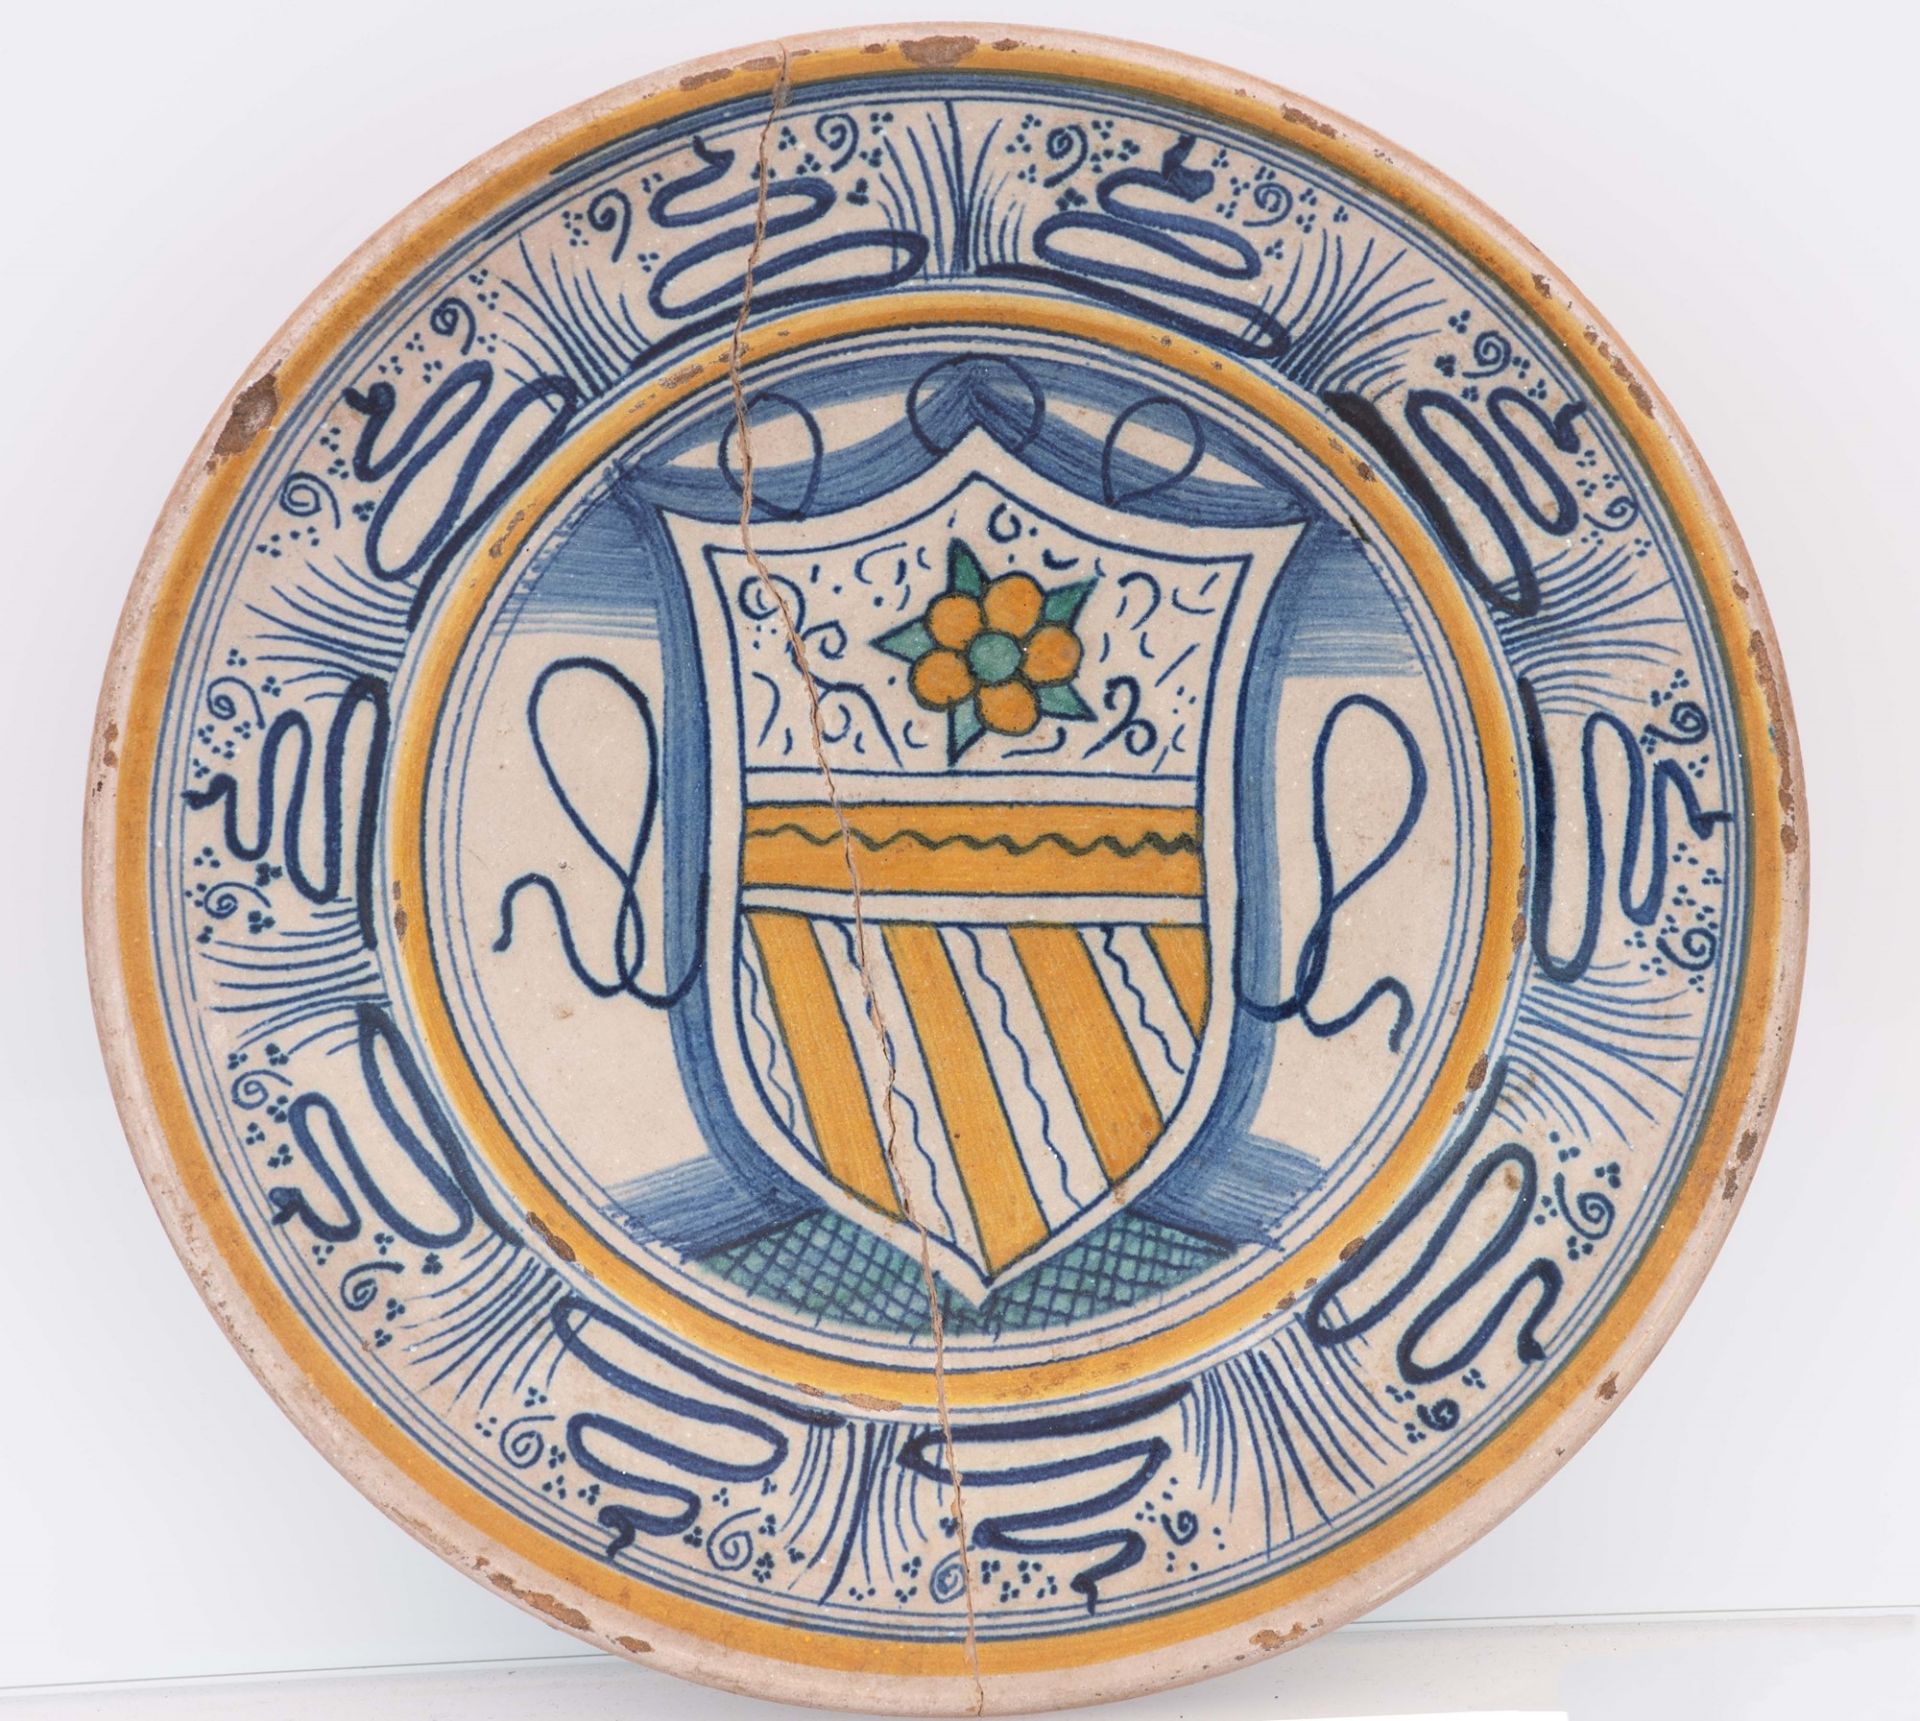 Piatto con stemma della famiglia Orsini. Manifattura Deruta seconda metà del XV - primi anni del XVI